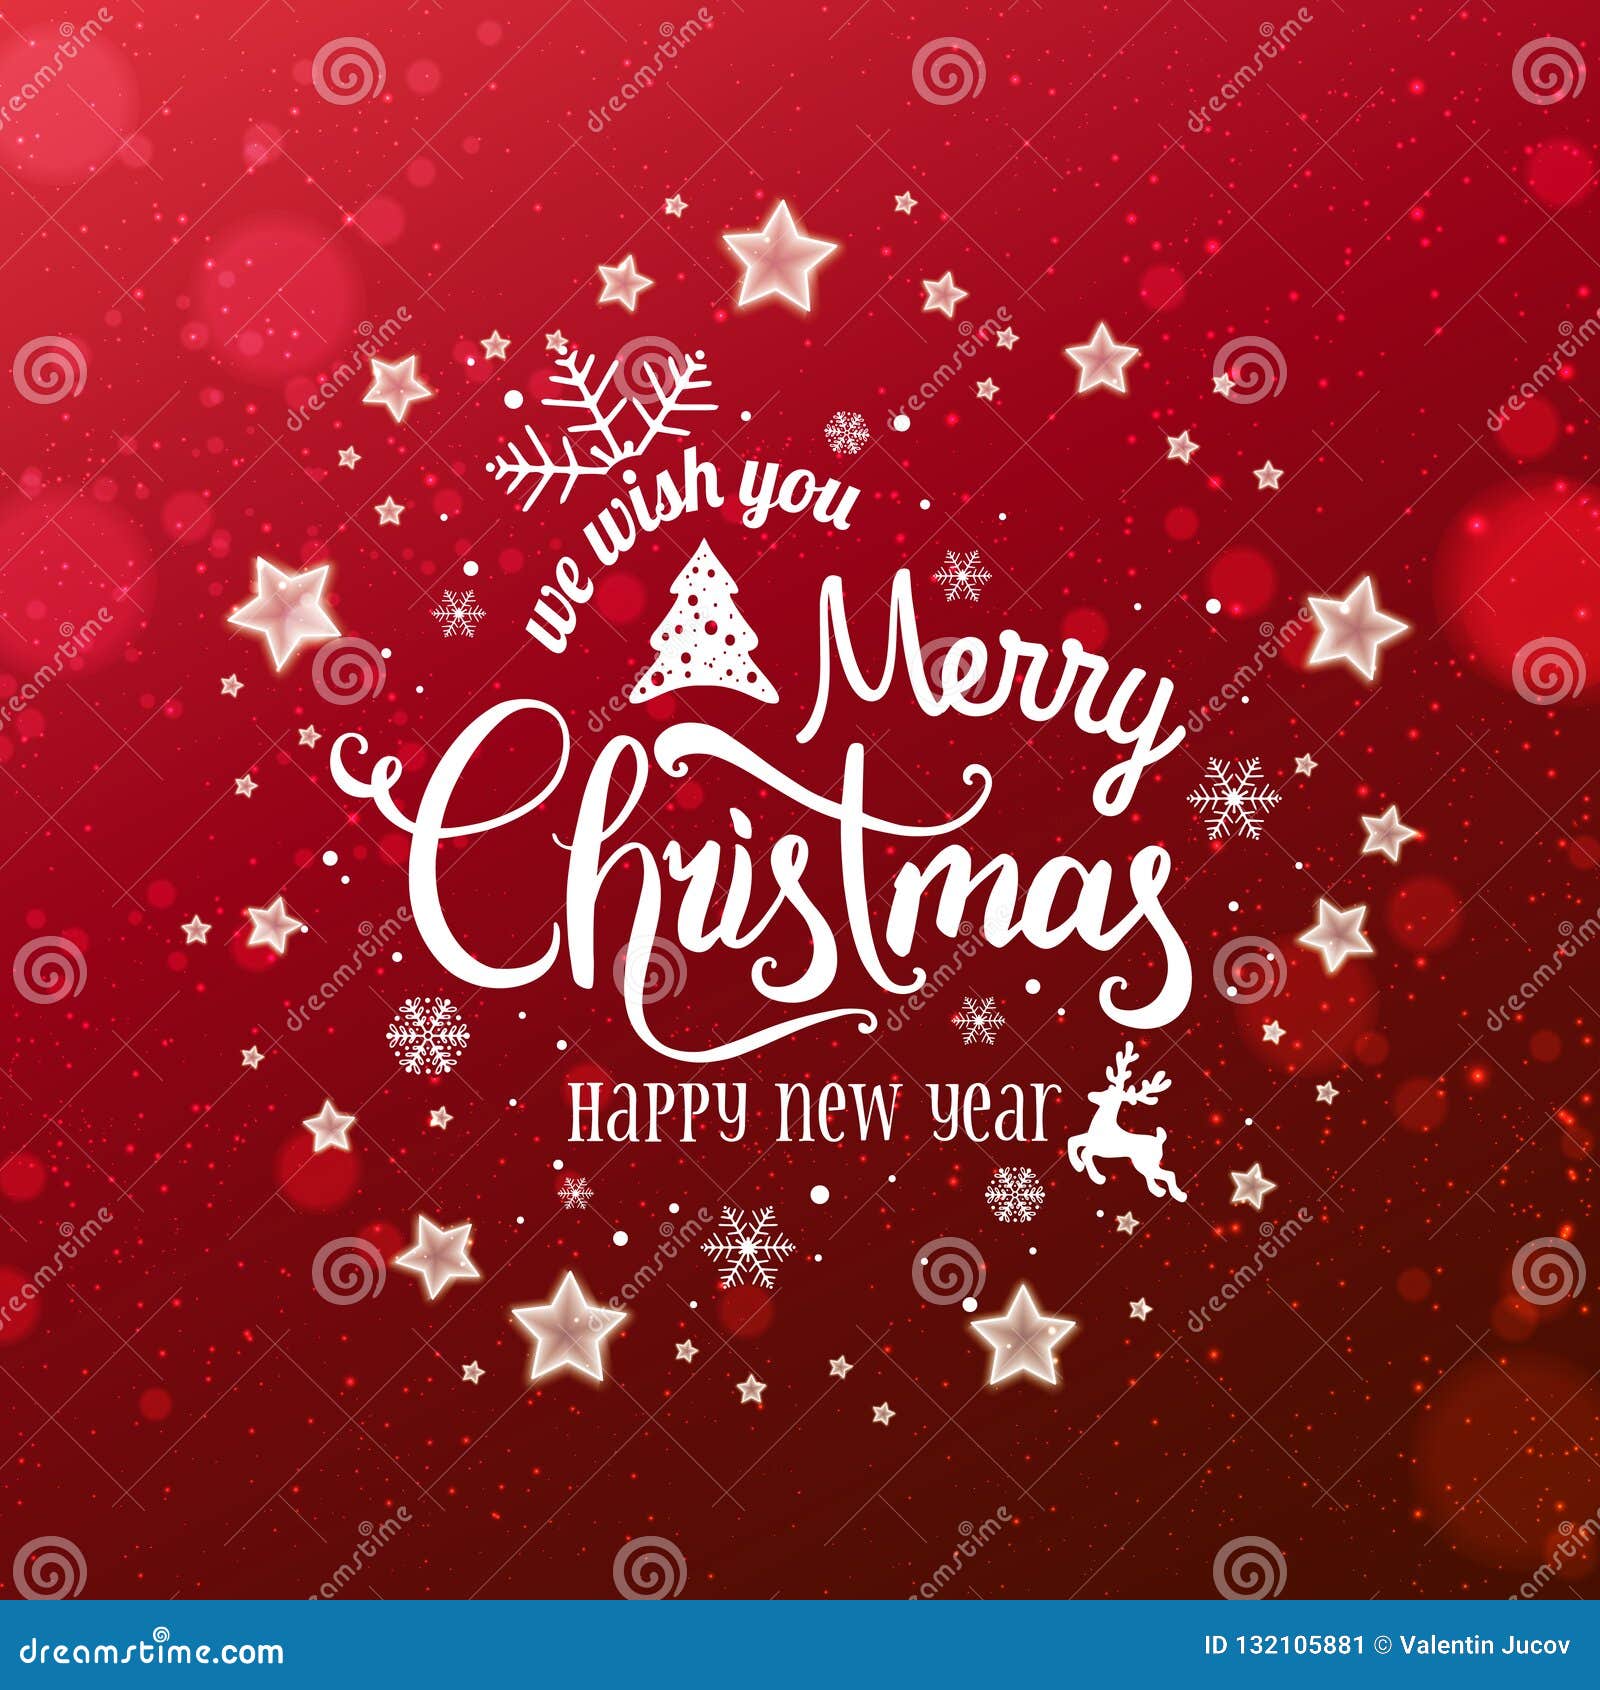 圣诞节和新年印刷在与雪花的红色xmas背景 光 星圣诞快乐看板卡库存例证 插画包括有圣诞快乐看板卡 圣诞节和新年印刷在与雪花的红色xmas背景 光 星